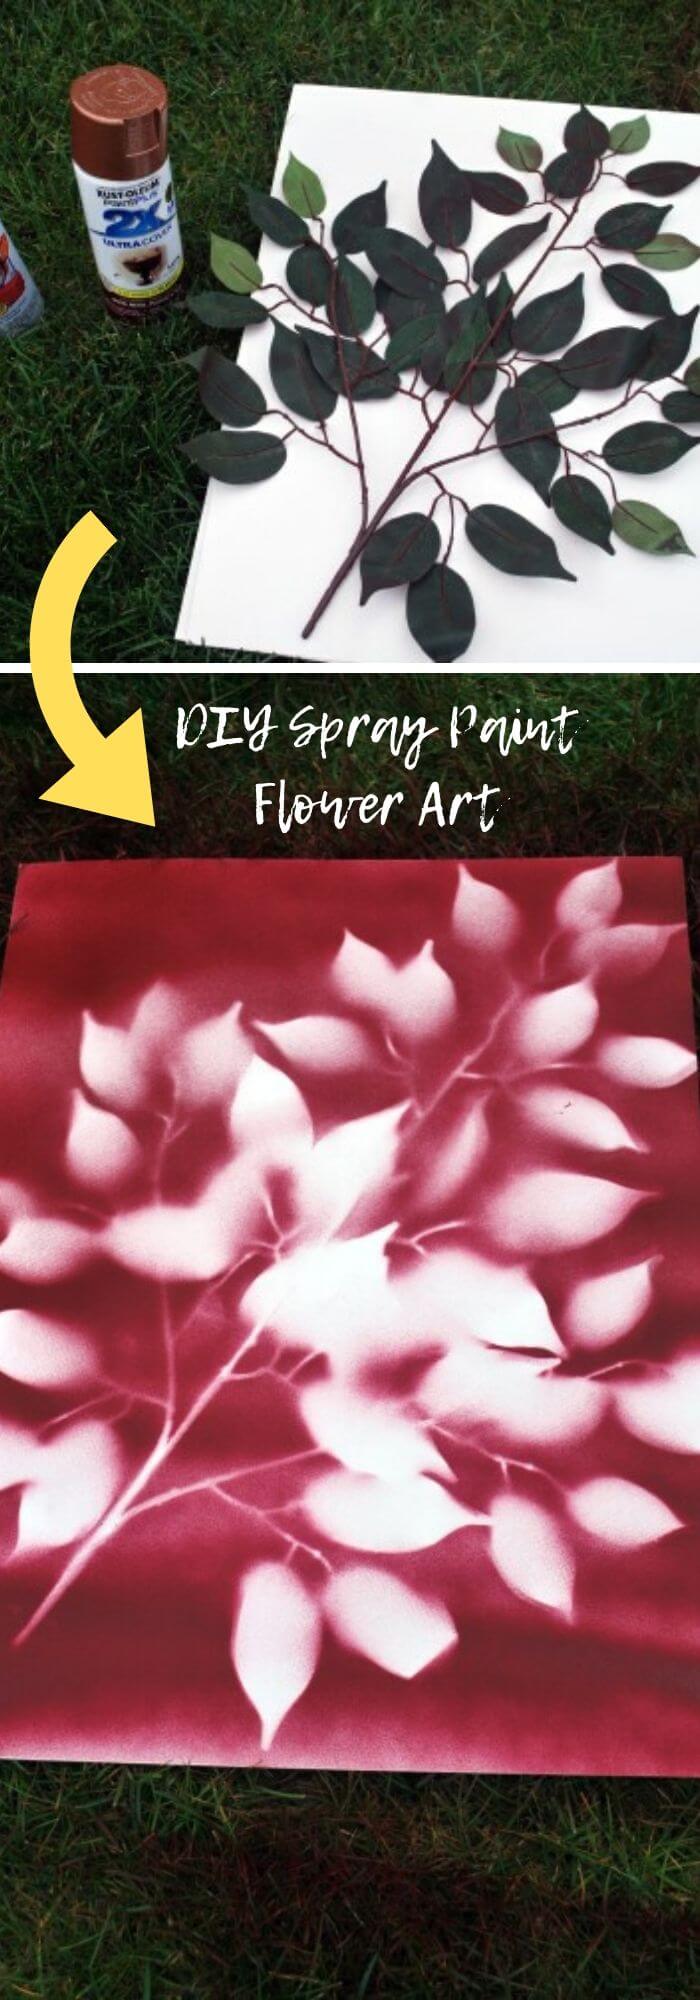 3 spray paint ideas